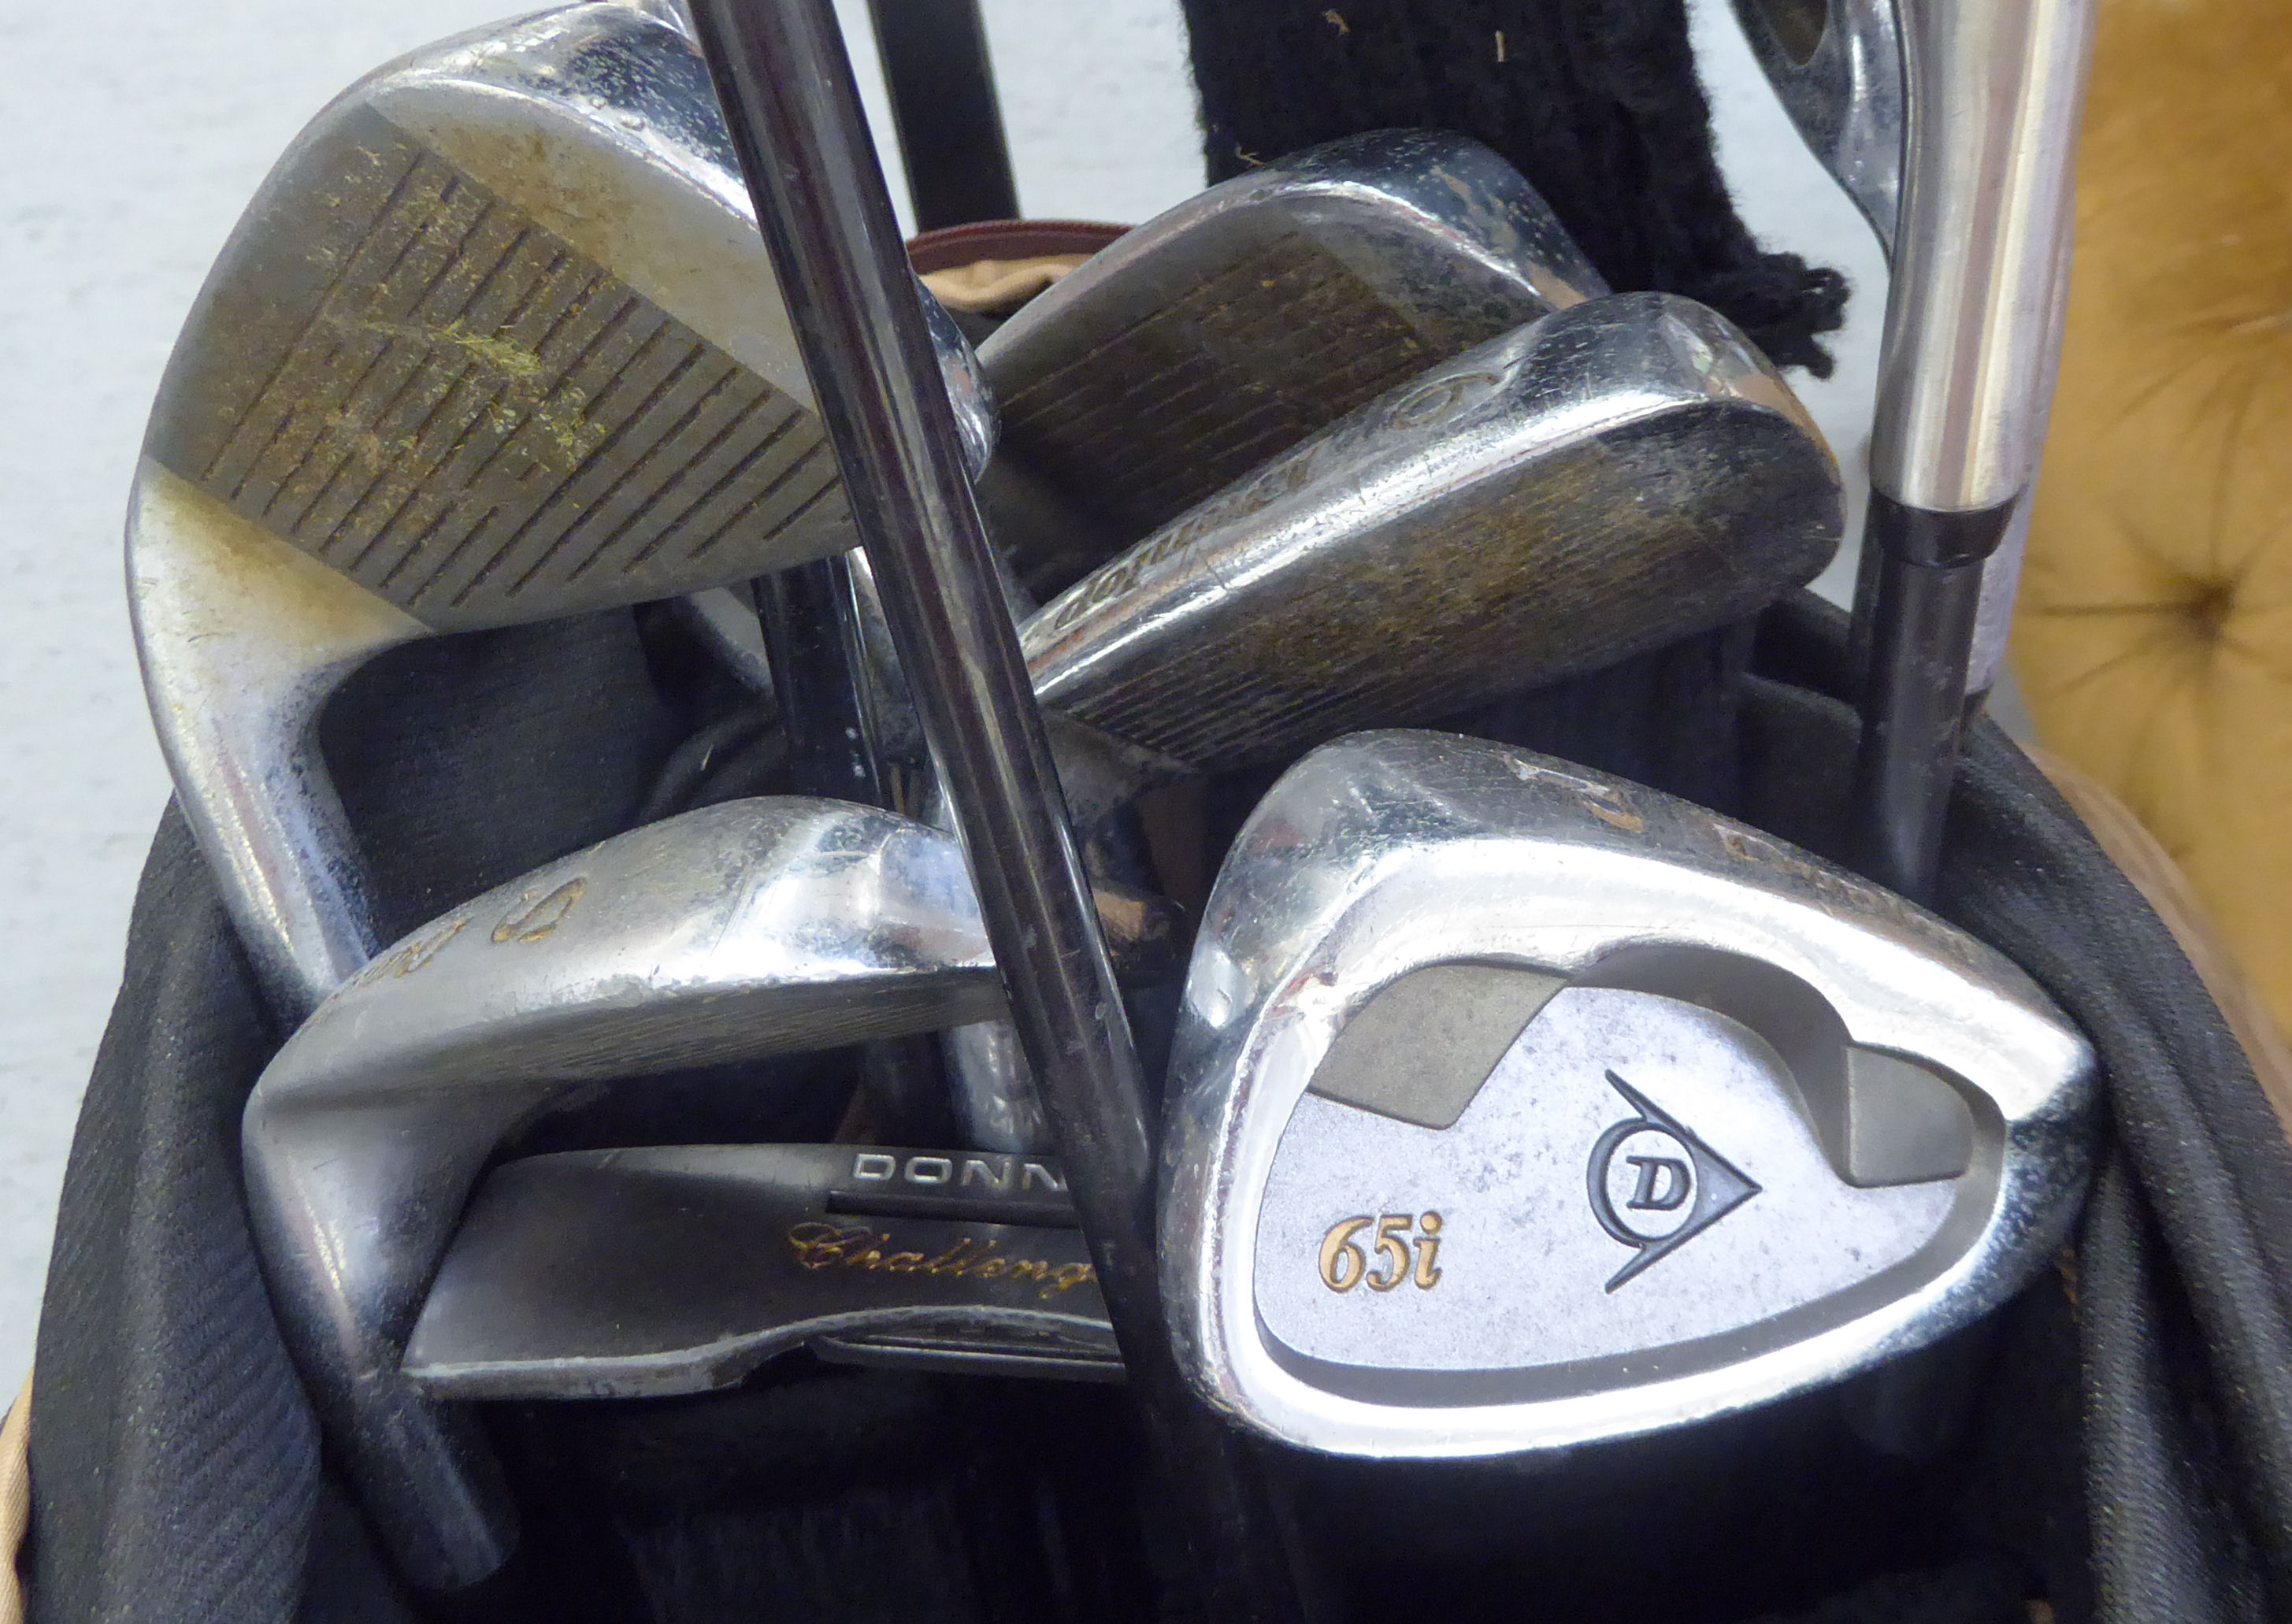 A Cobra golf bag; gentlemens right-handed Dunlop golf clubs; a Dunlop golf trolley; - Image 2 of 4